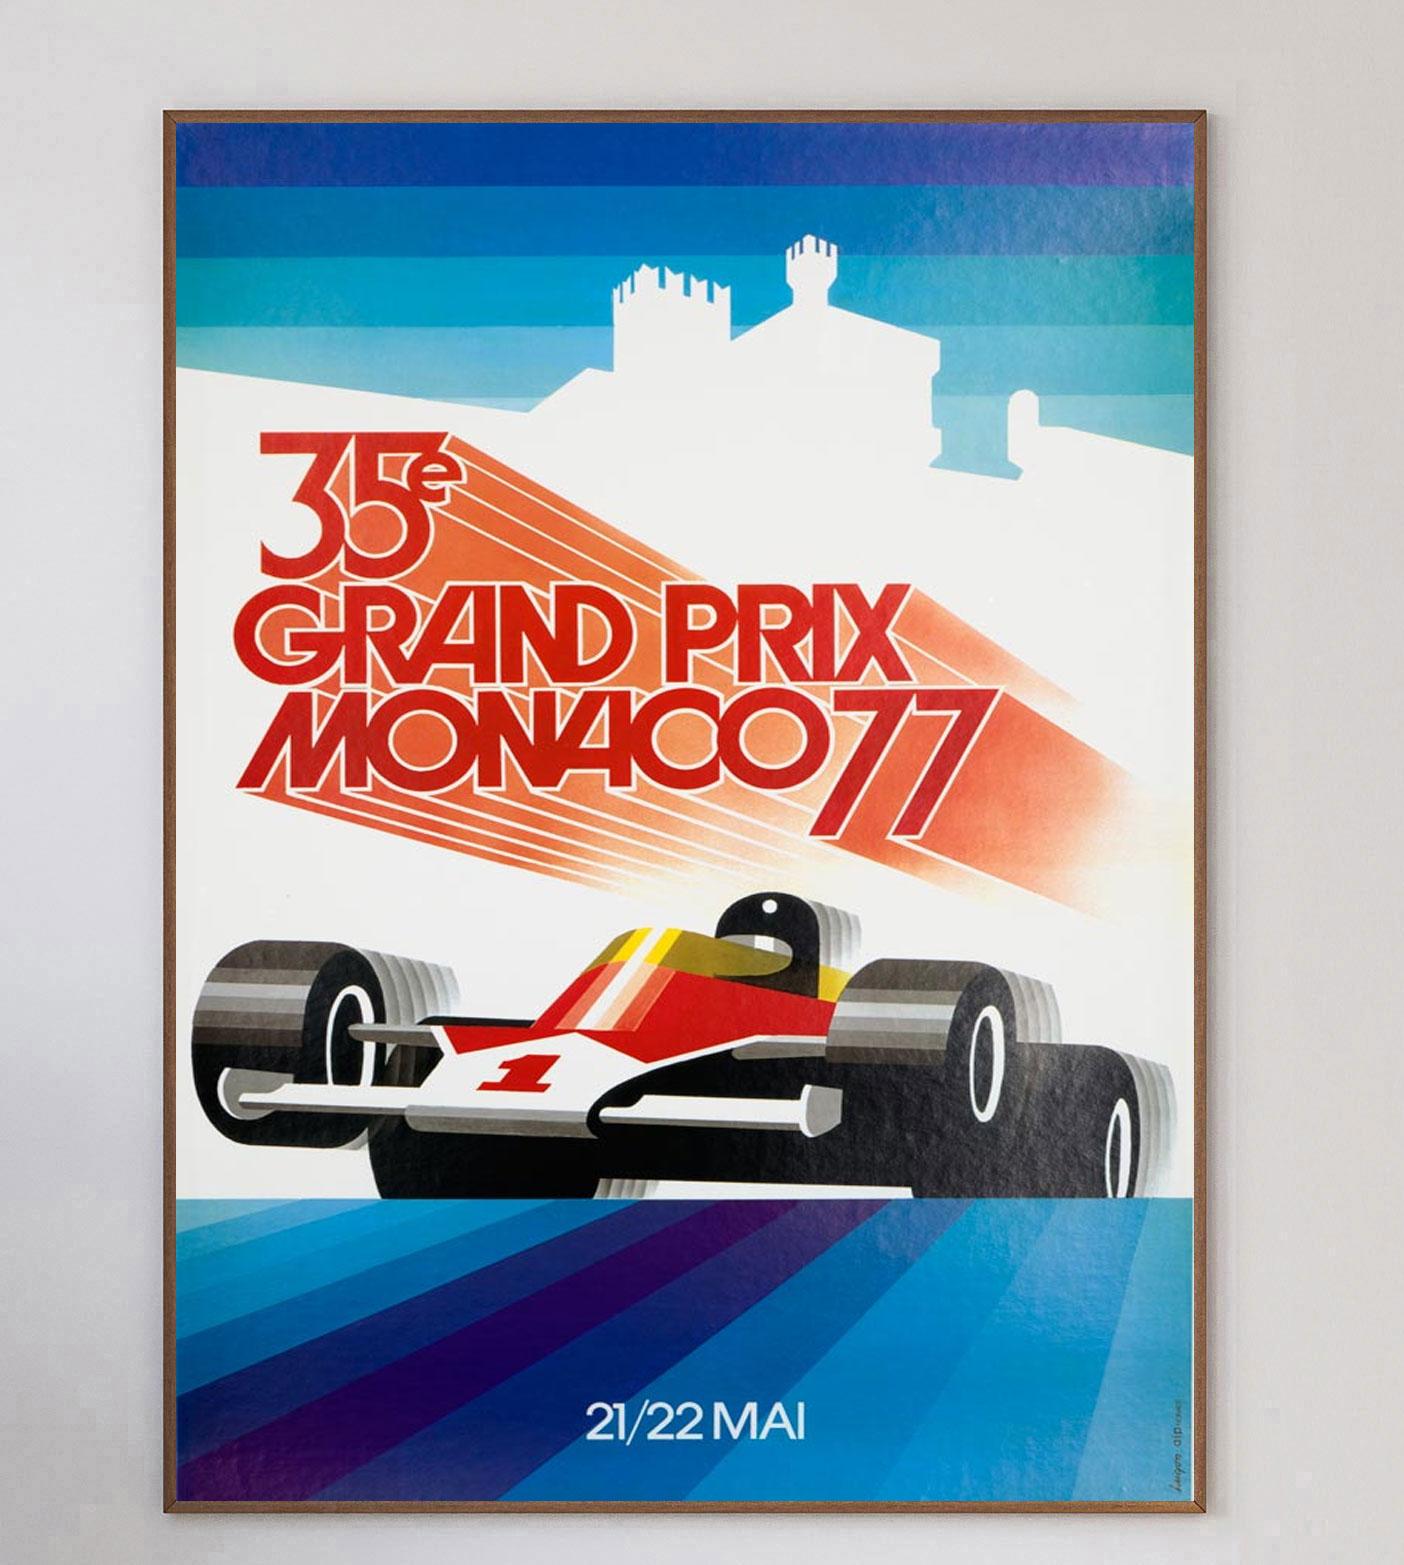 Cette affiche est celle du Grand Prix de Monaco 1977, avec la brillante illustration de Carpenter. L'œuvre d'art vibrante et moderne représente la vitesse des coureurs.

Le Grand Prix de Monaco 1977 a eu lieu le 22 mai 1977 et a été remporté par